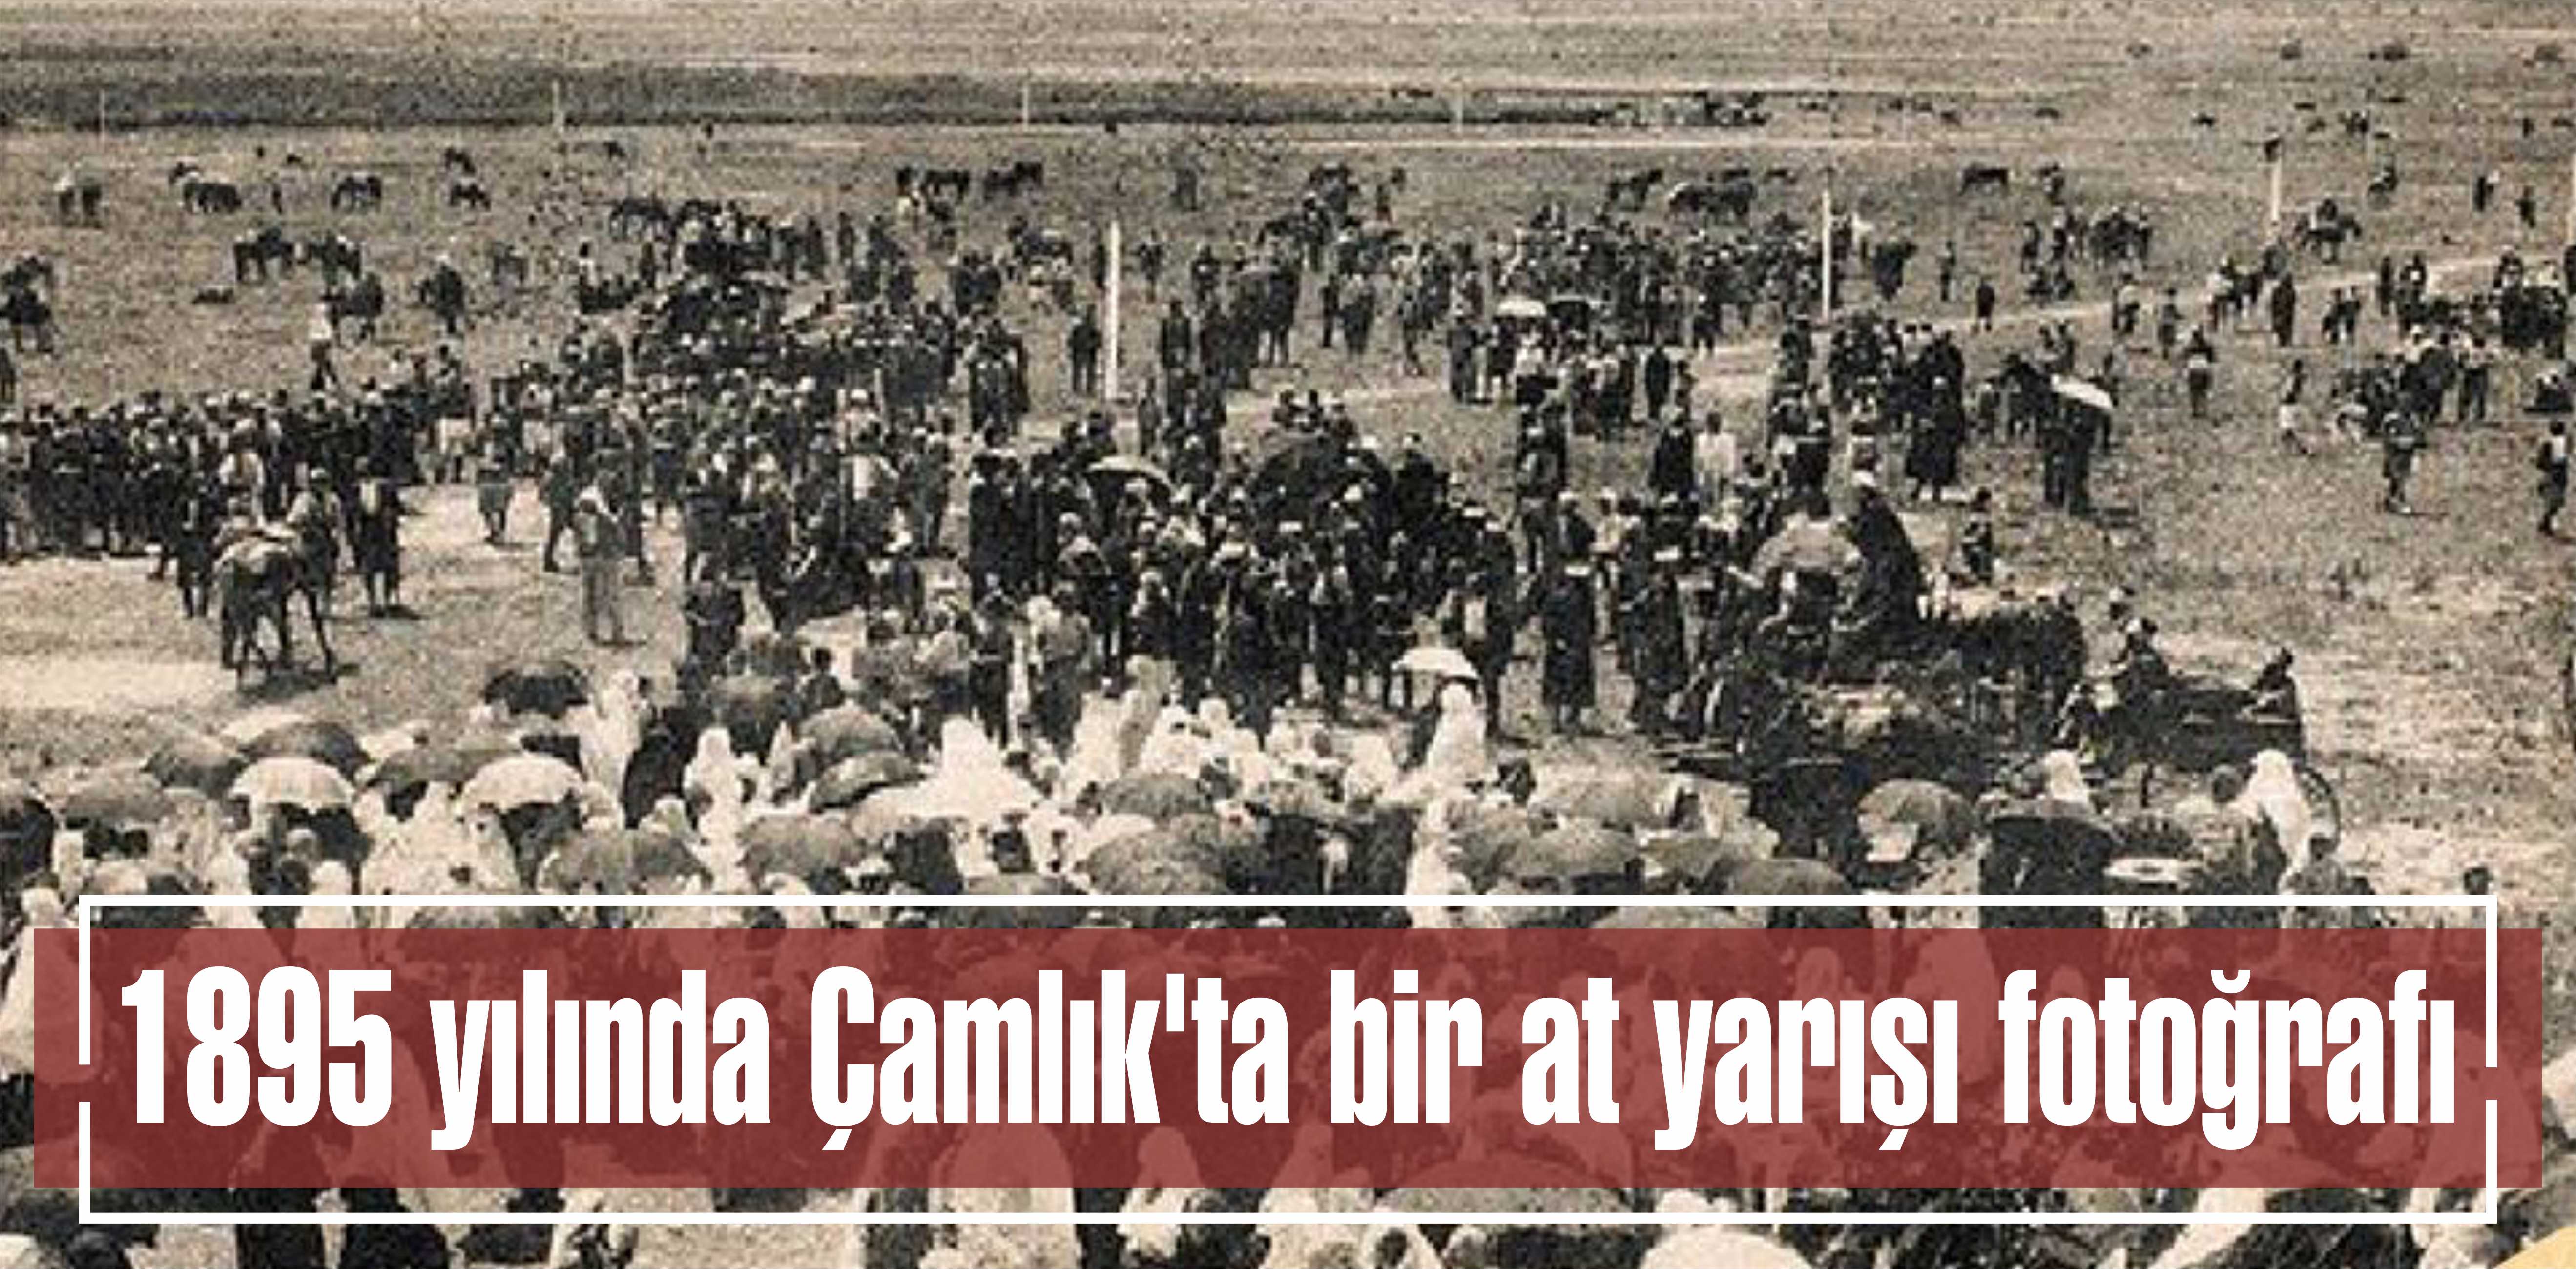 1895 yılında Çamlık’ta bir at yarışı fotoğrafı